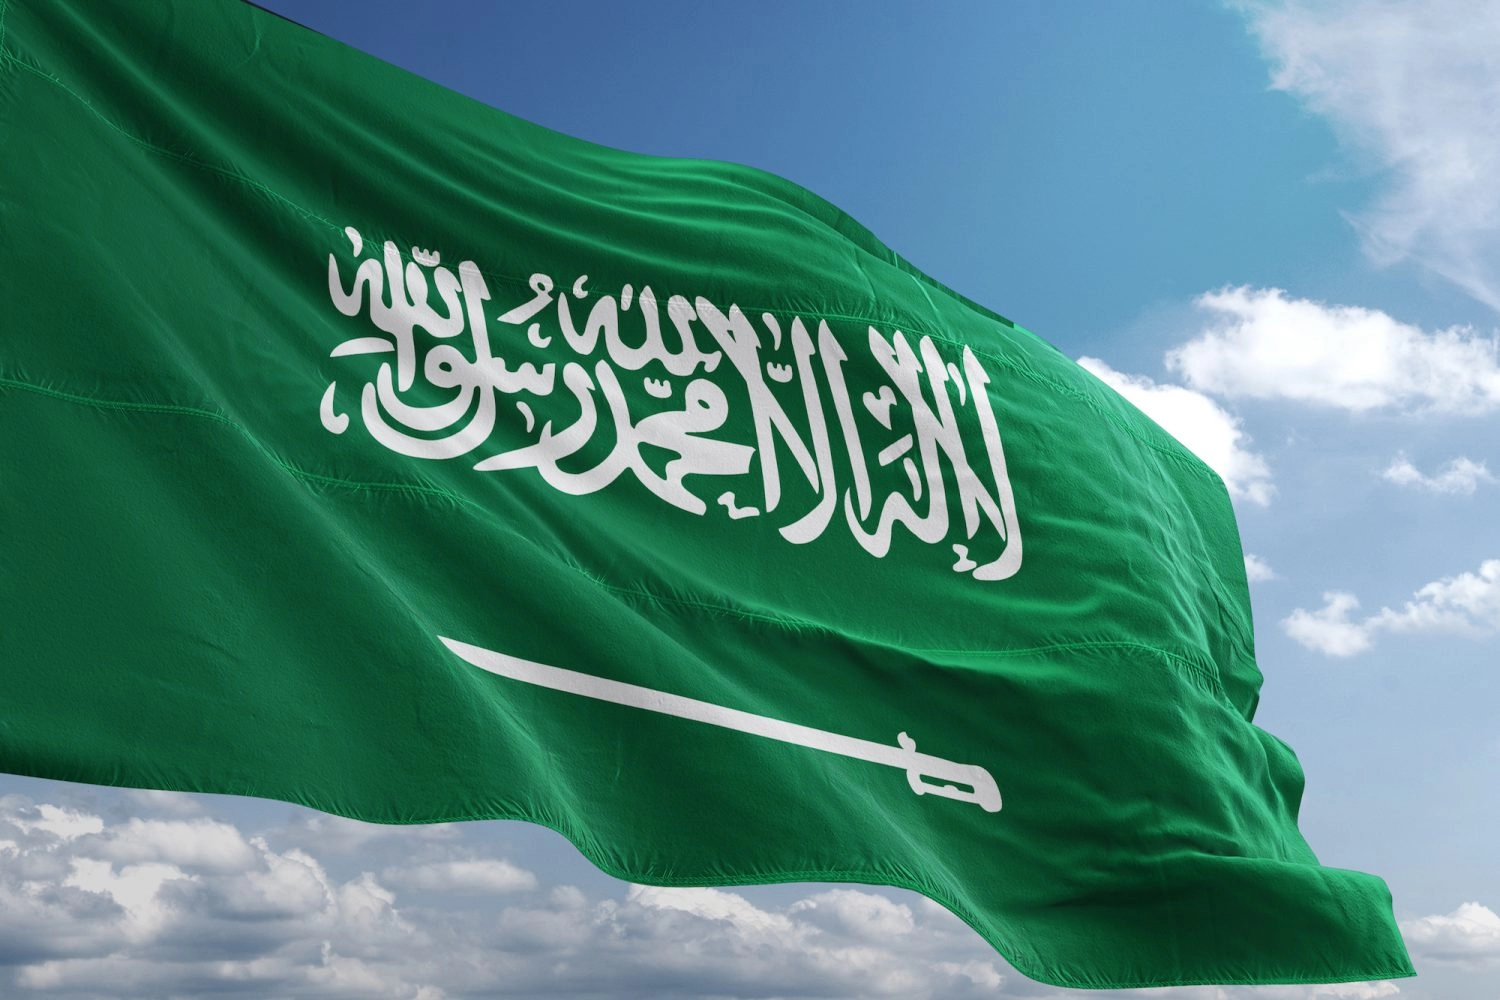 عاجل: الجوازات السعودية تفاجئ المقيمين بقرارات وشروط جديدة للبقاء في المملكة